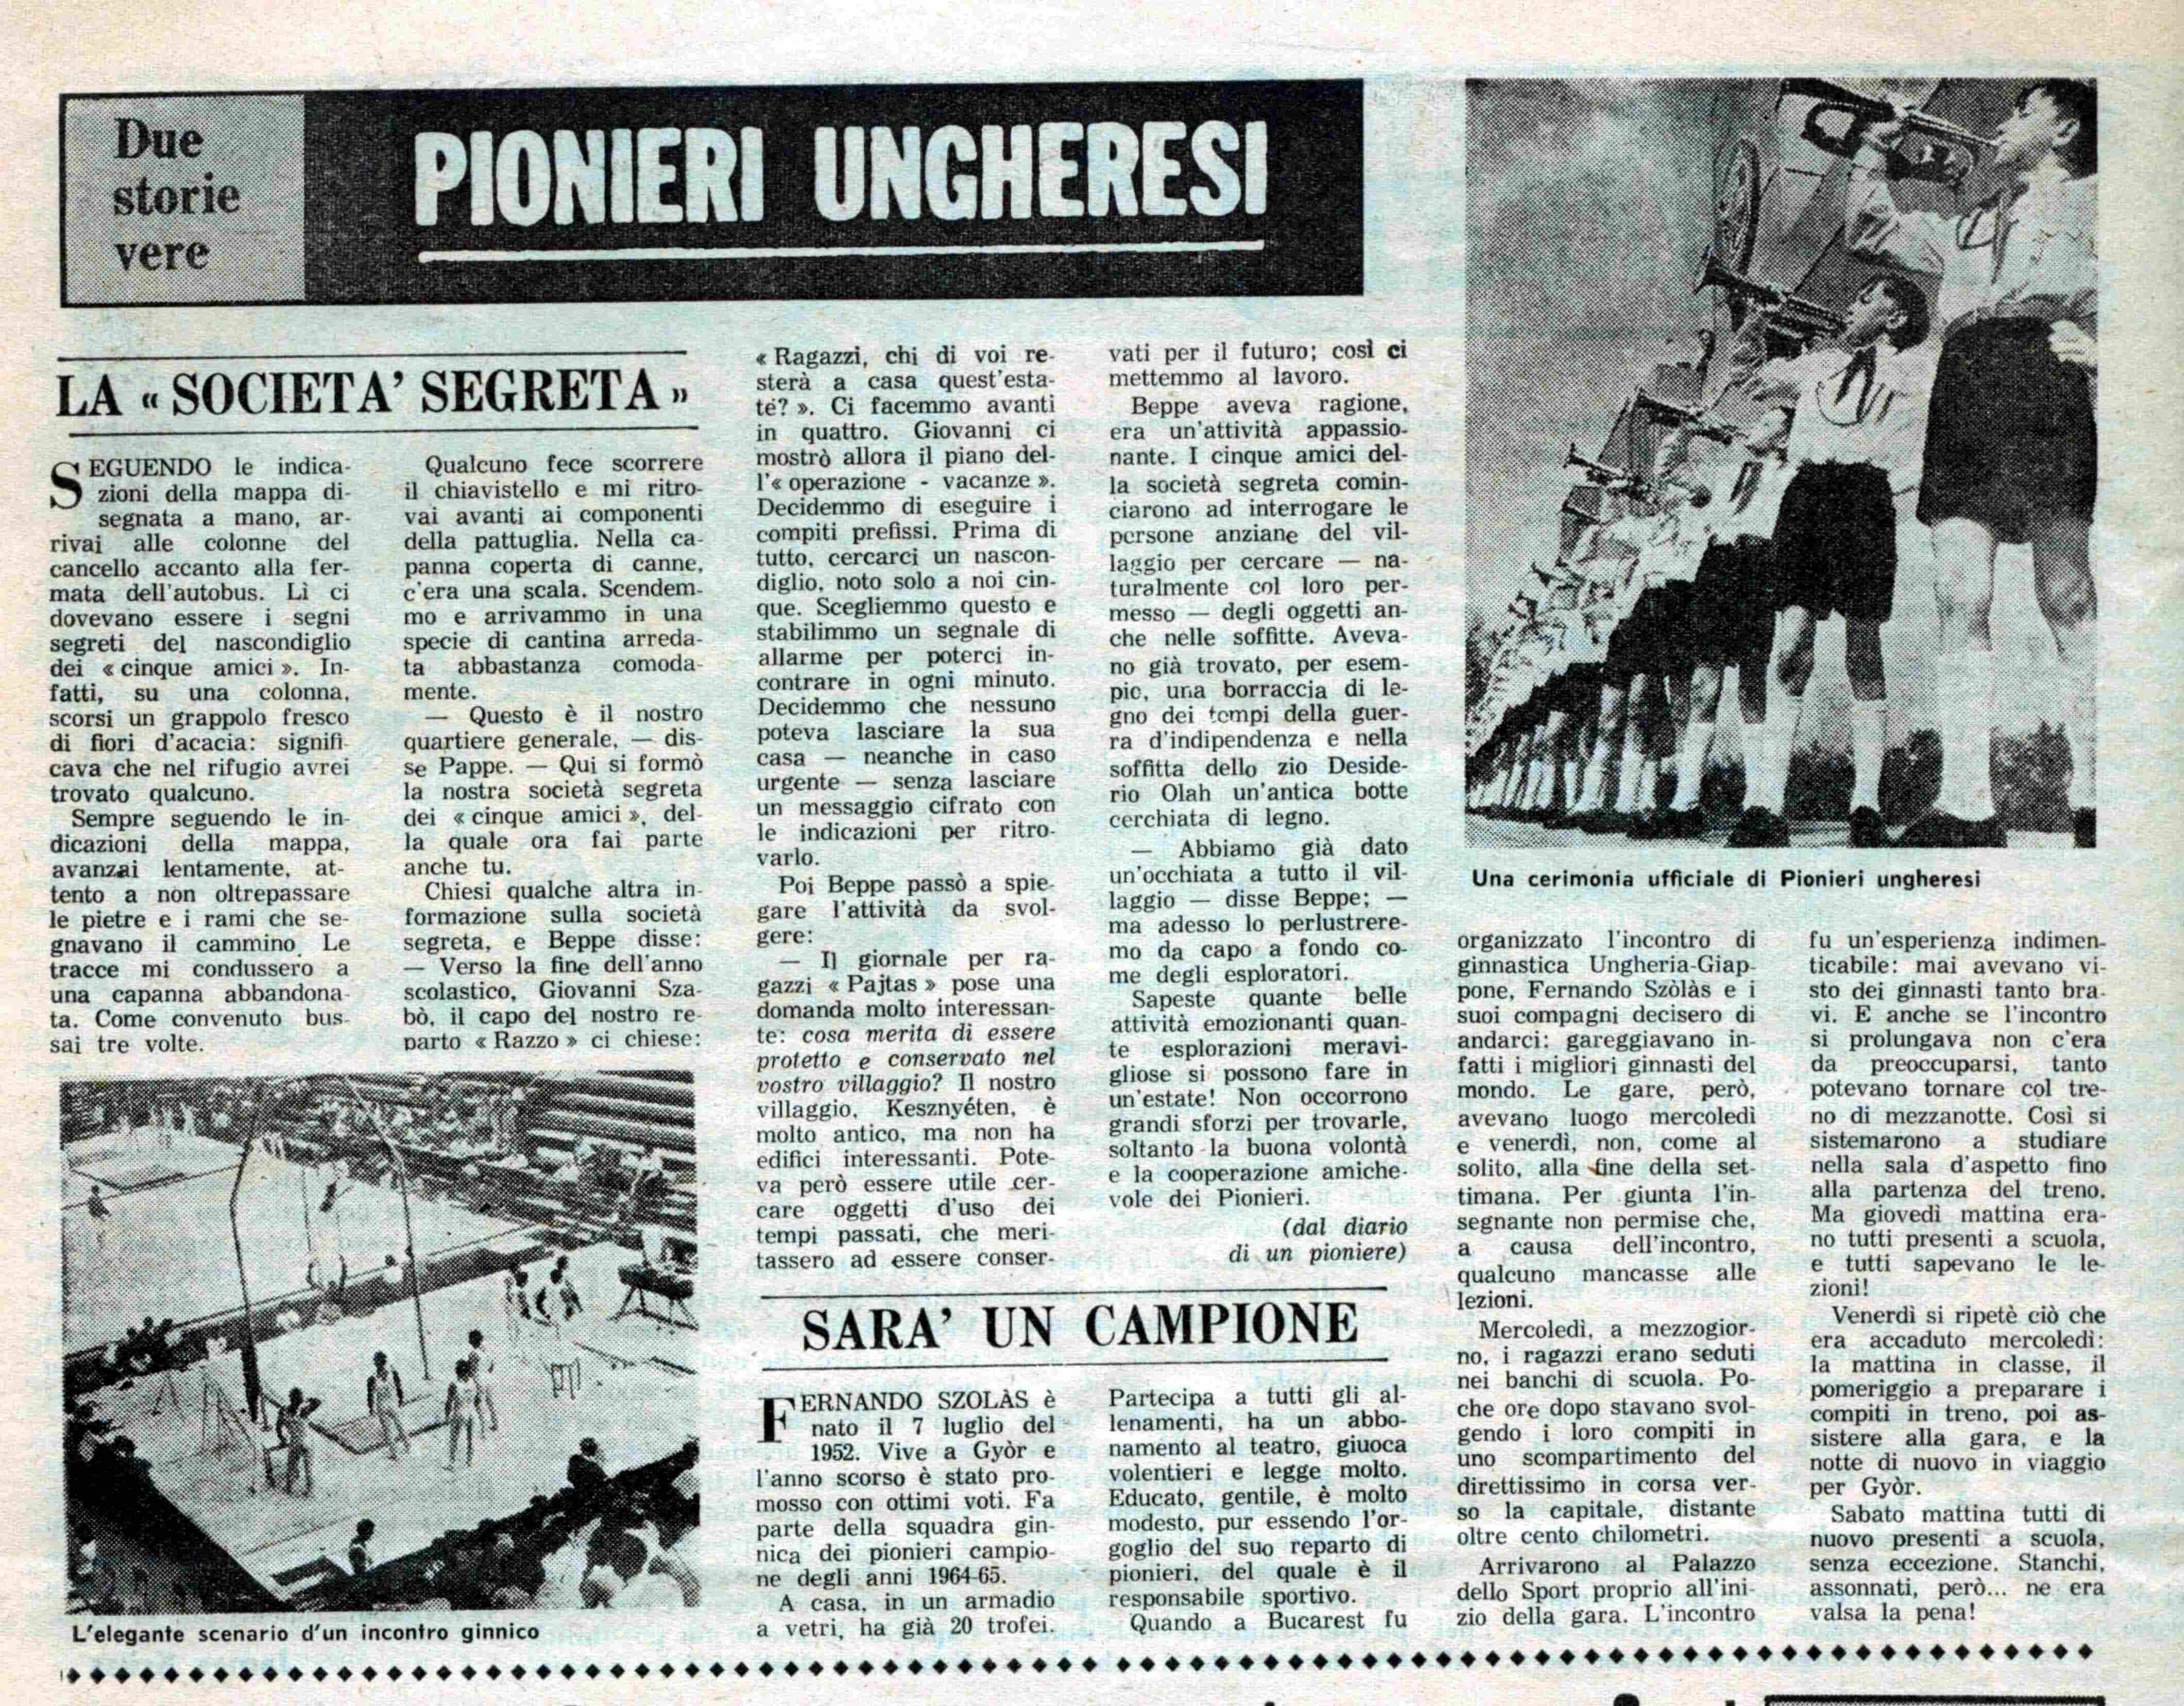 Pionieri in Ungheria n22. 3 giugno 1966